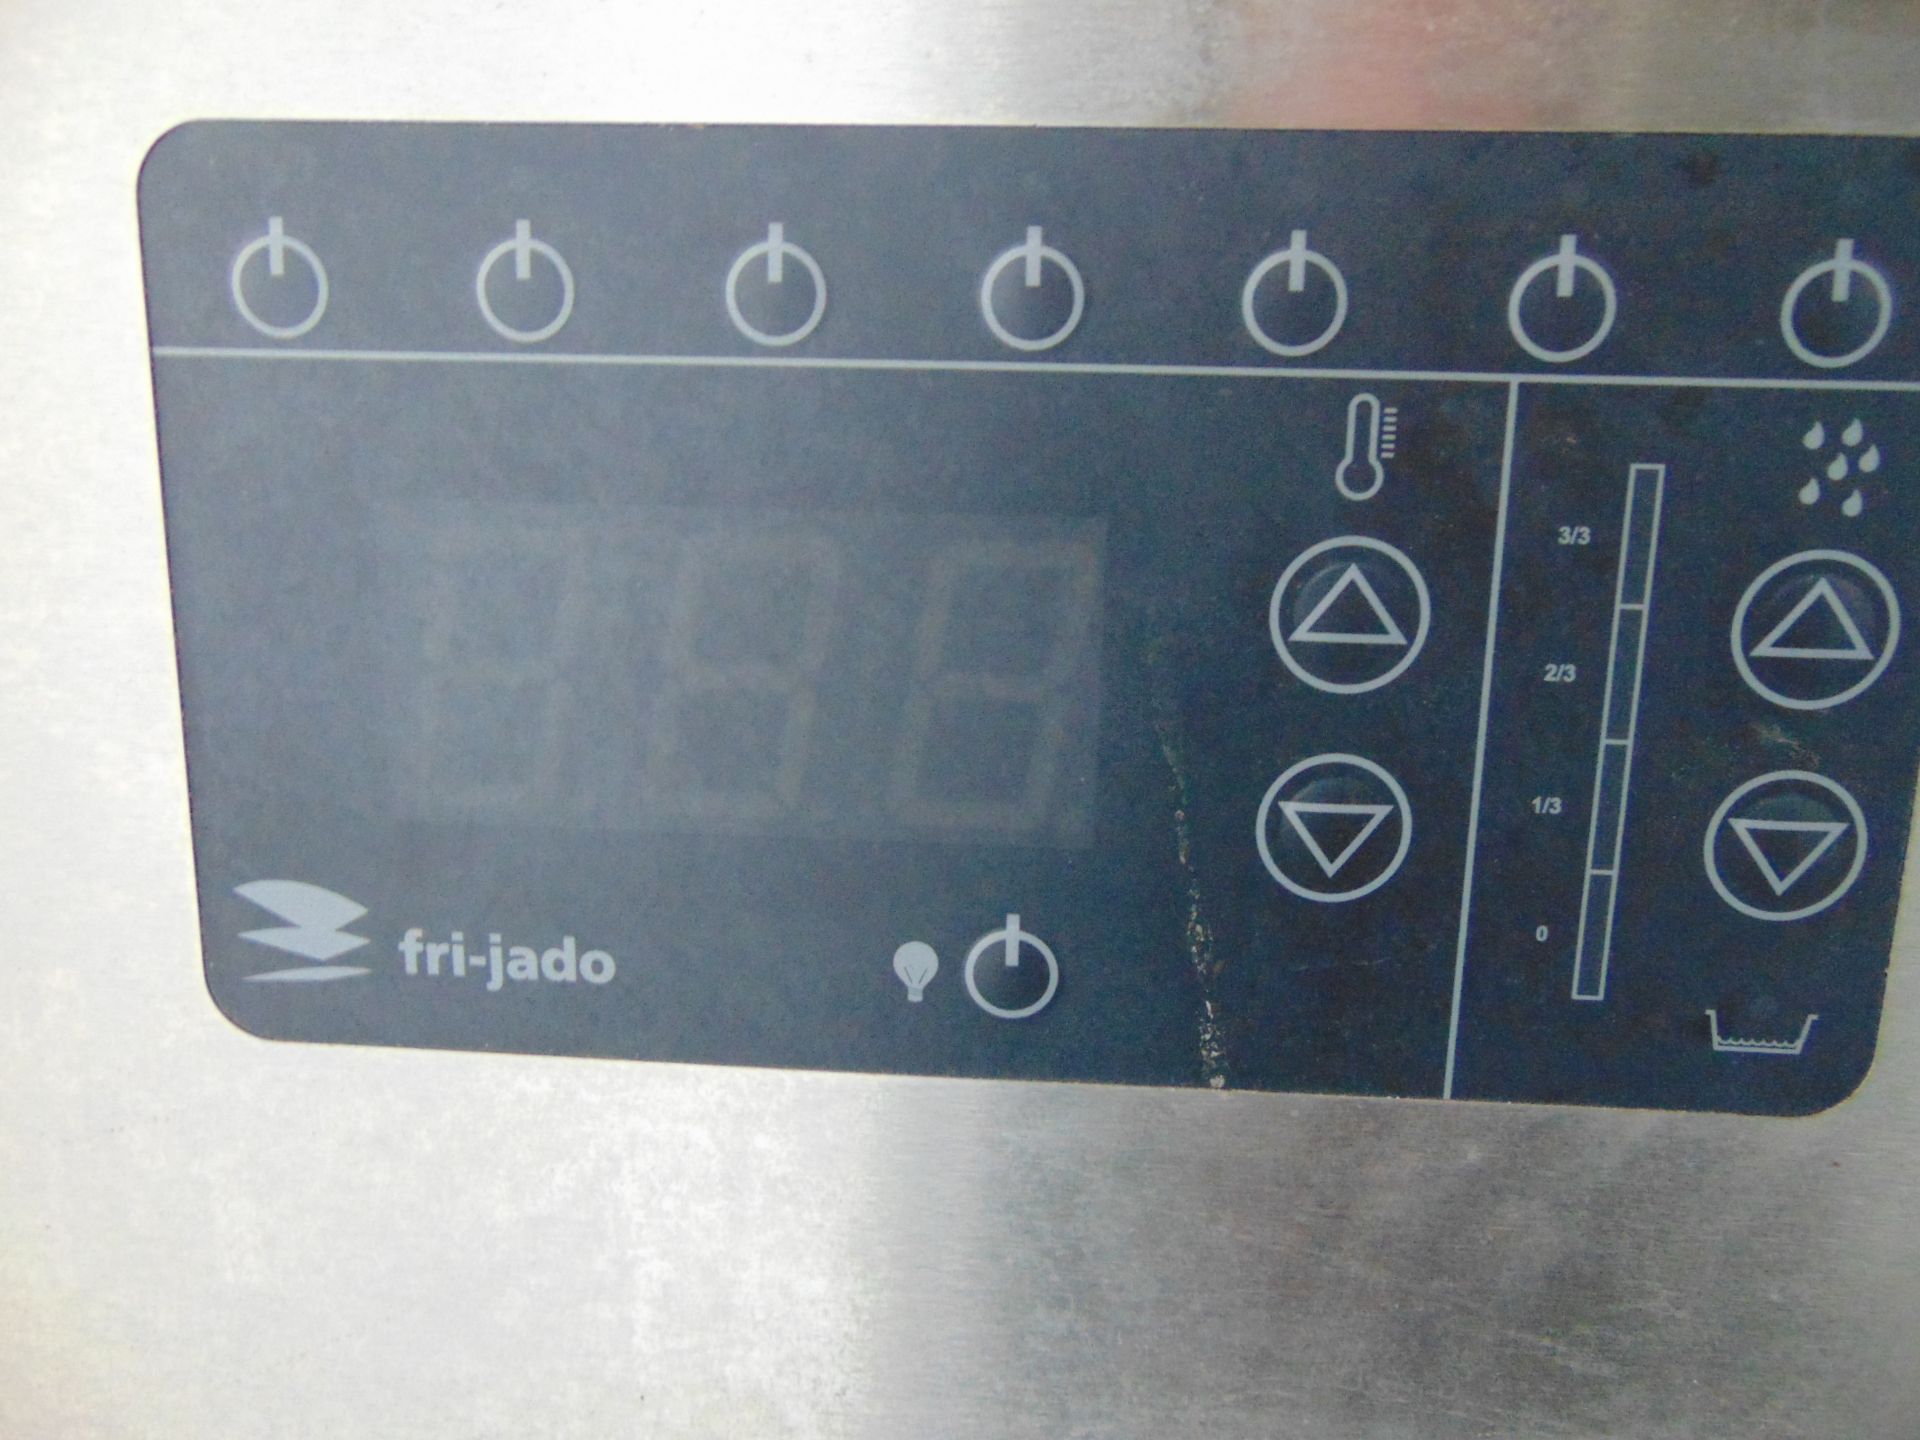 Fri-jado hot food servery Unit - Image 6 of 11